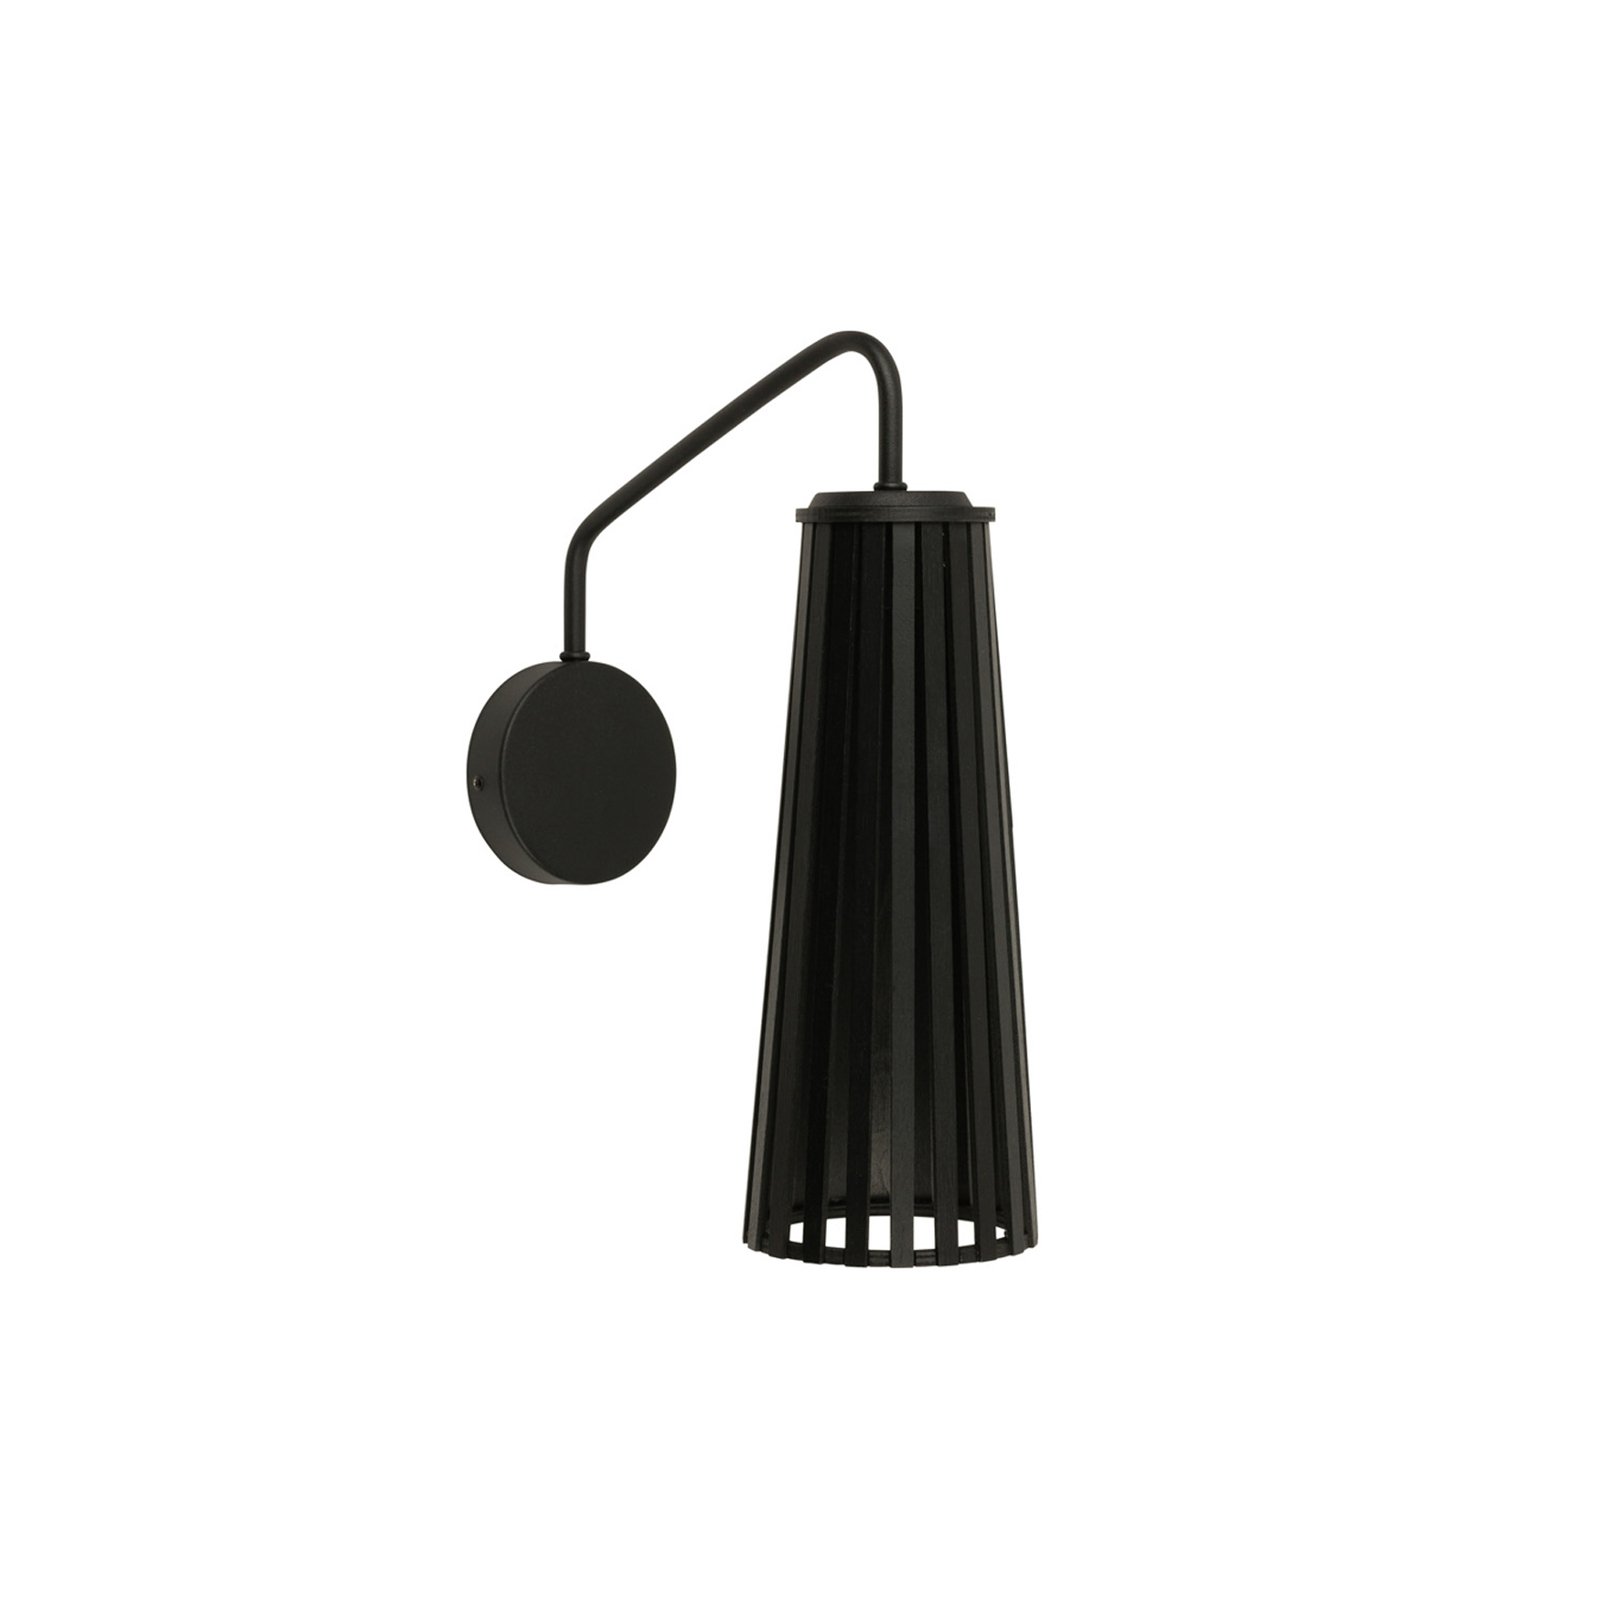 Vägglampa Dover svart, 1 lampa